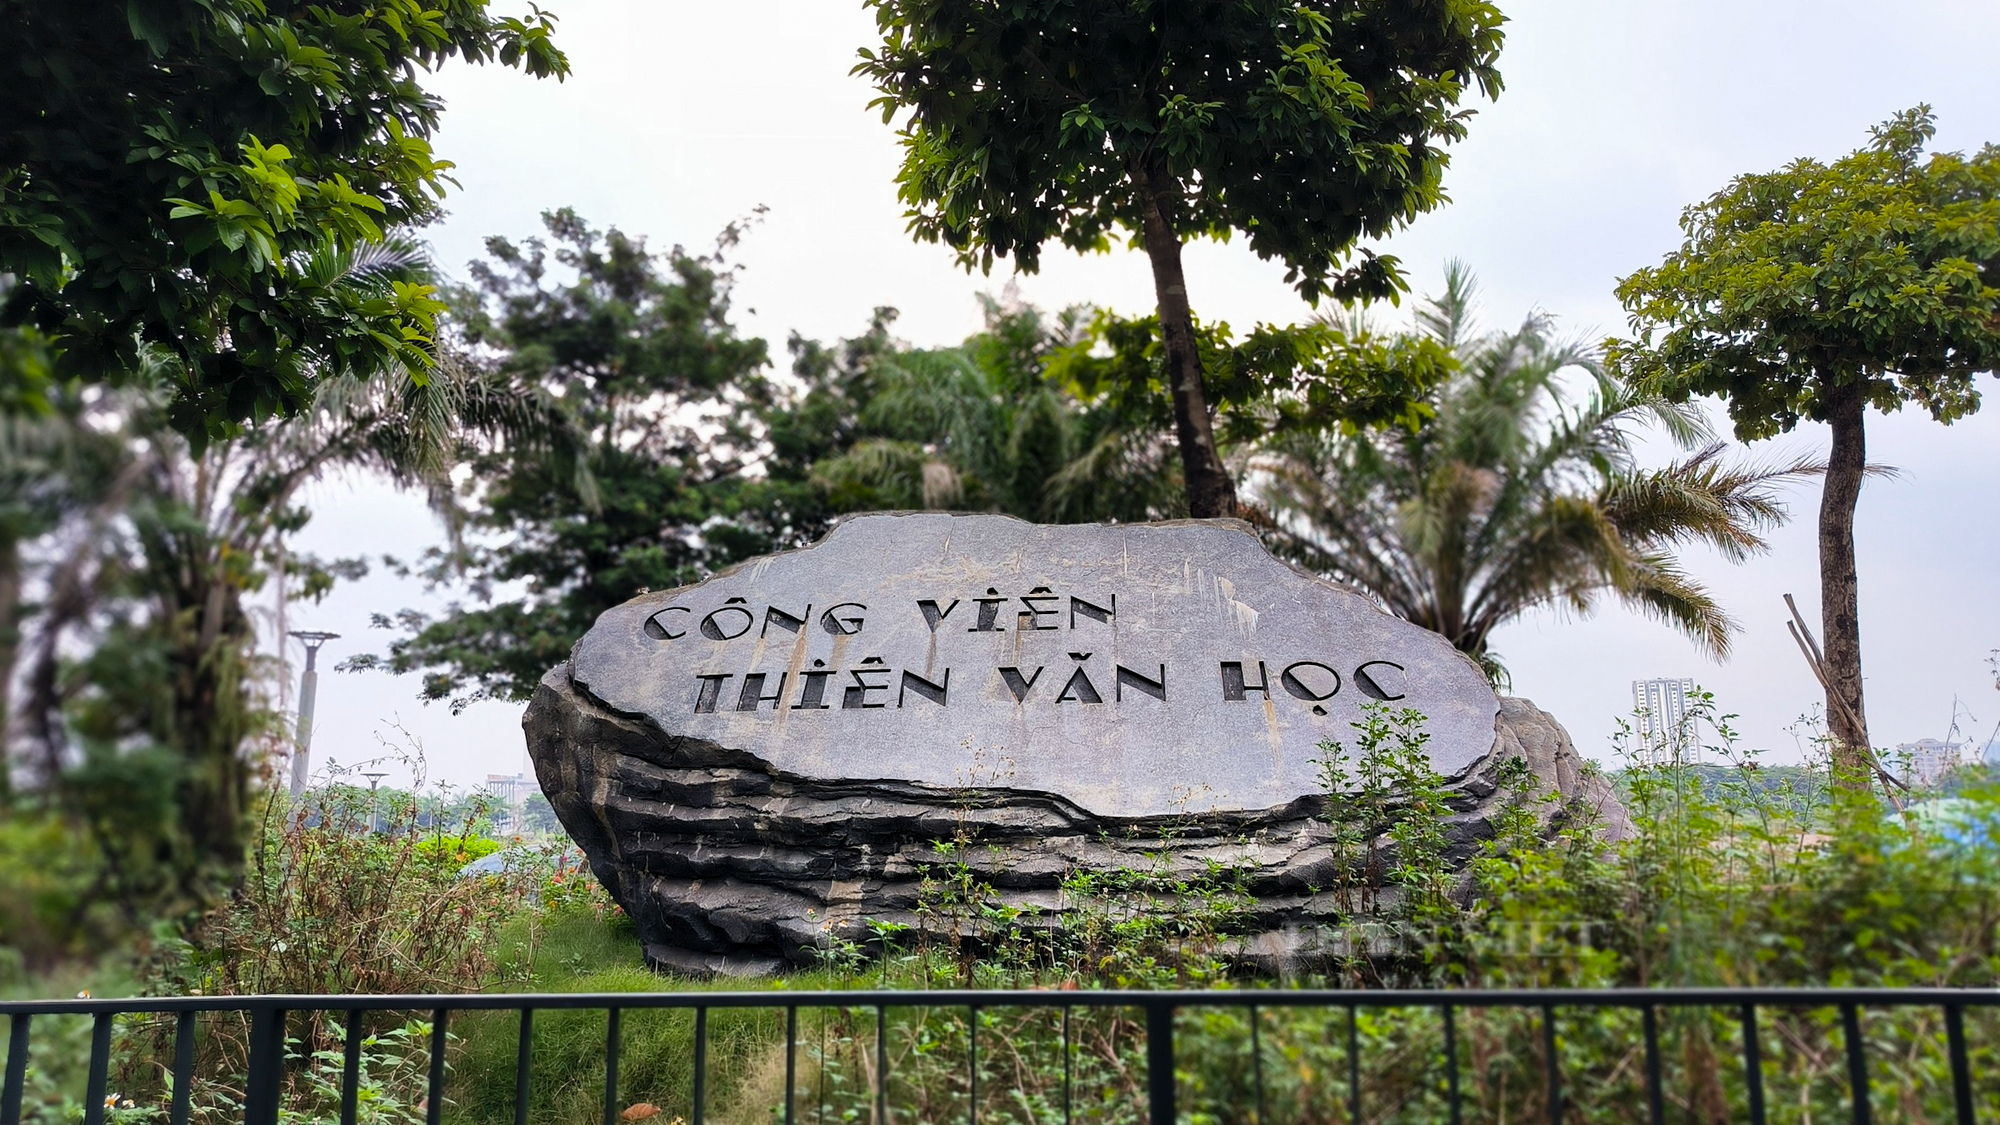 Công viên Thiên văn học lớn nhất Đông Nam Á tại Hà Nội hoang vắng, cỏ dại mọc um tùm - Ảnh 2.